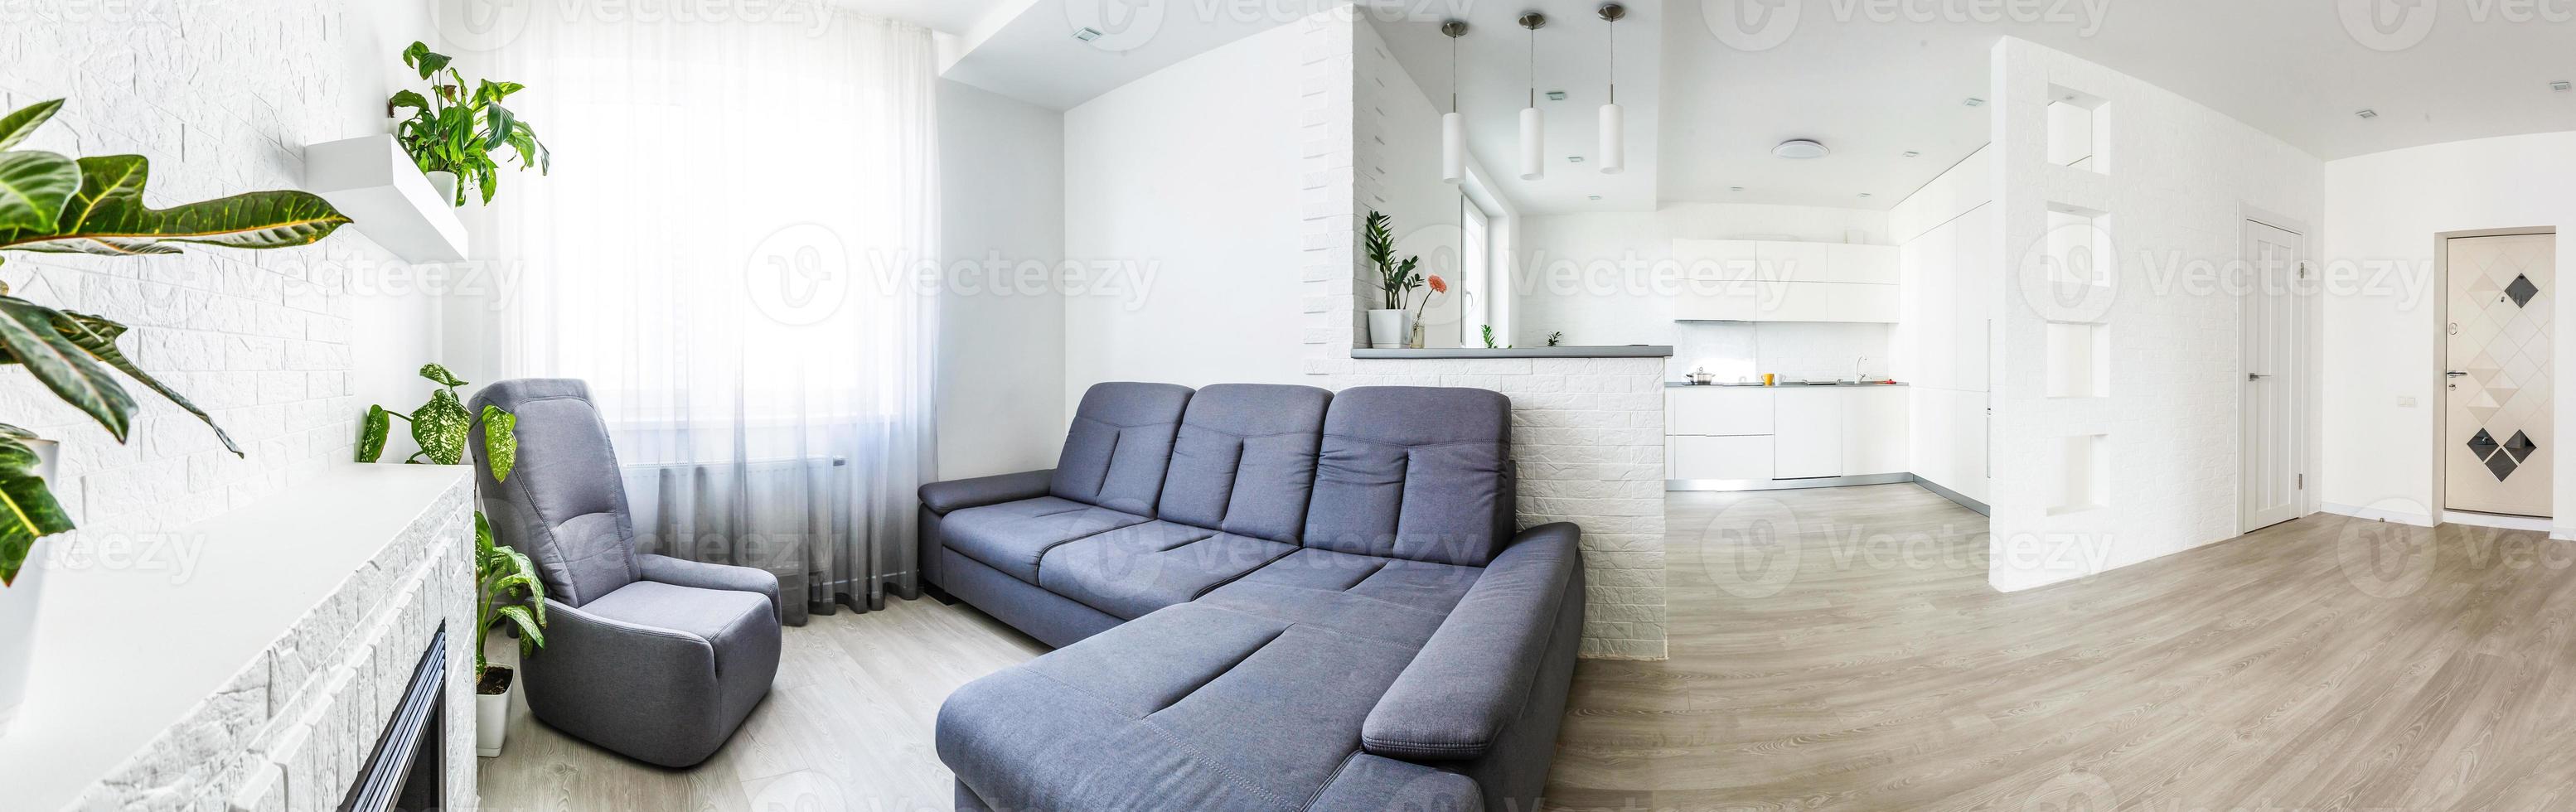 panoramico Visualizza a partire dal cucinino per Aperto vivente camera nel moderno progettato appartamento foto